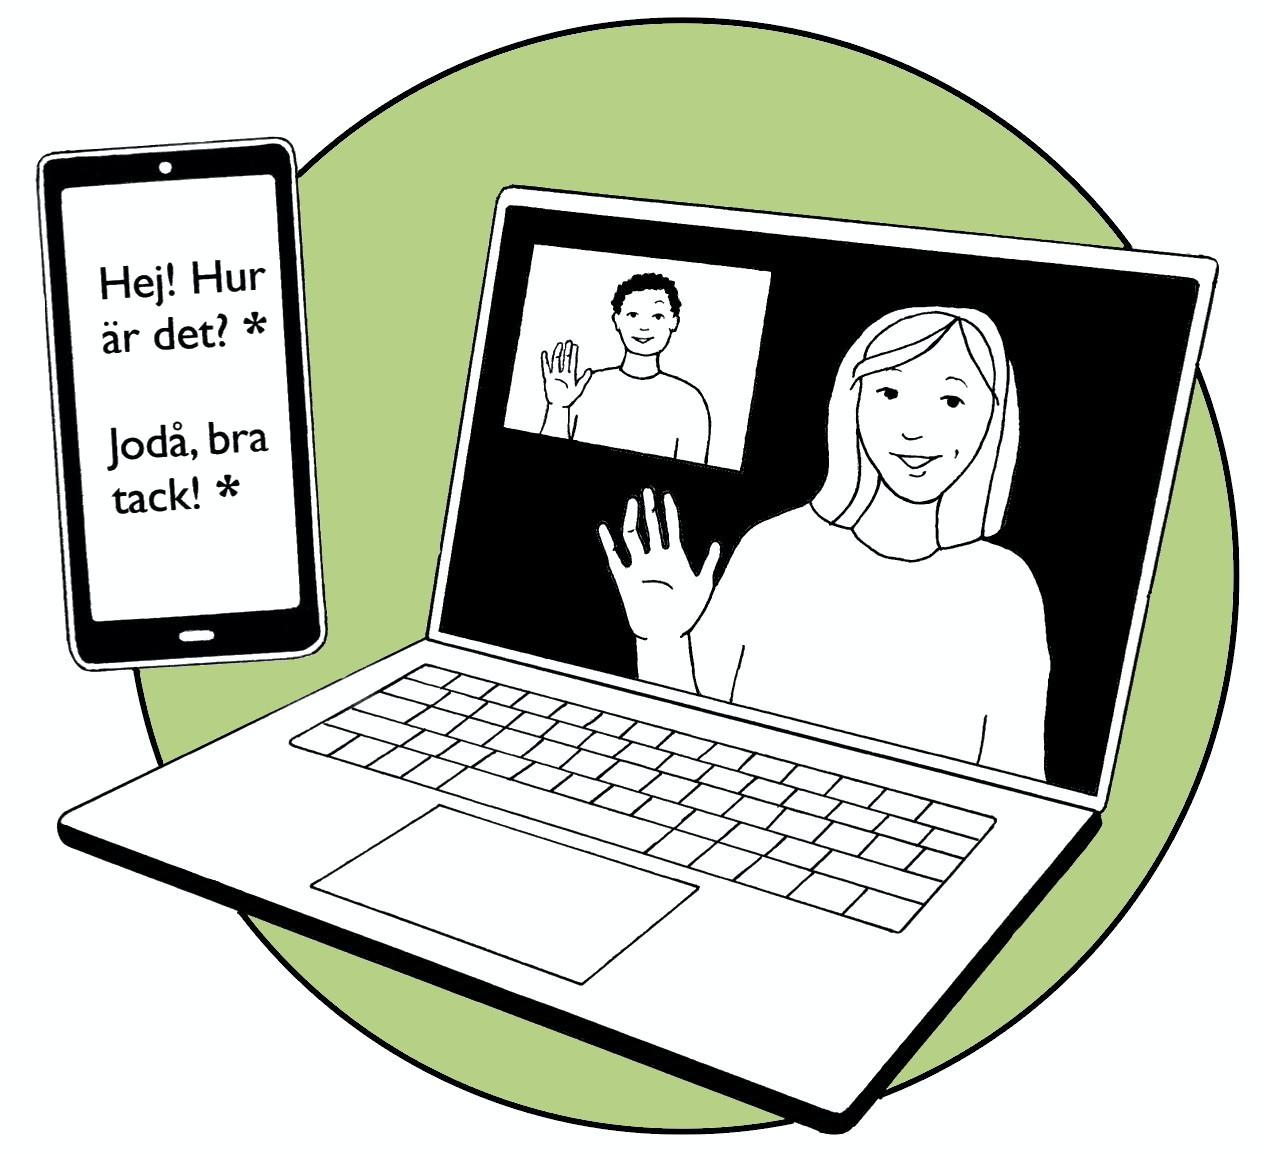 Tecknade exempel för hur samtal med bild och text kan se ut, så kallad alternativ telefoni. Den tecknade mobiltelefonen och datorn ramas in av en grön cirkelformad bottenplatta. Illustration Majsan Sundell.